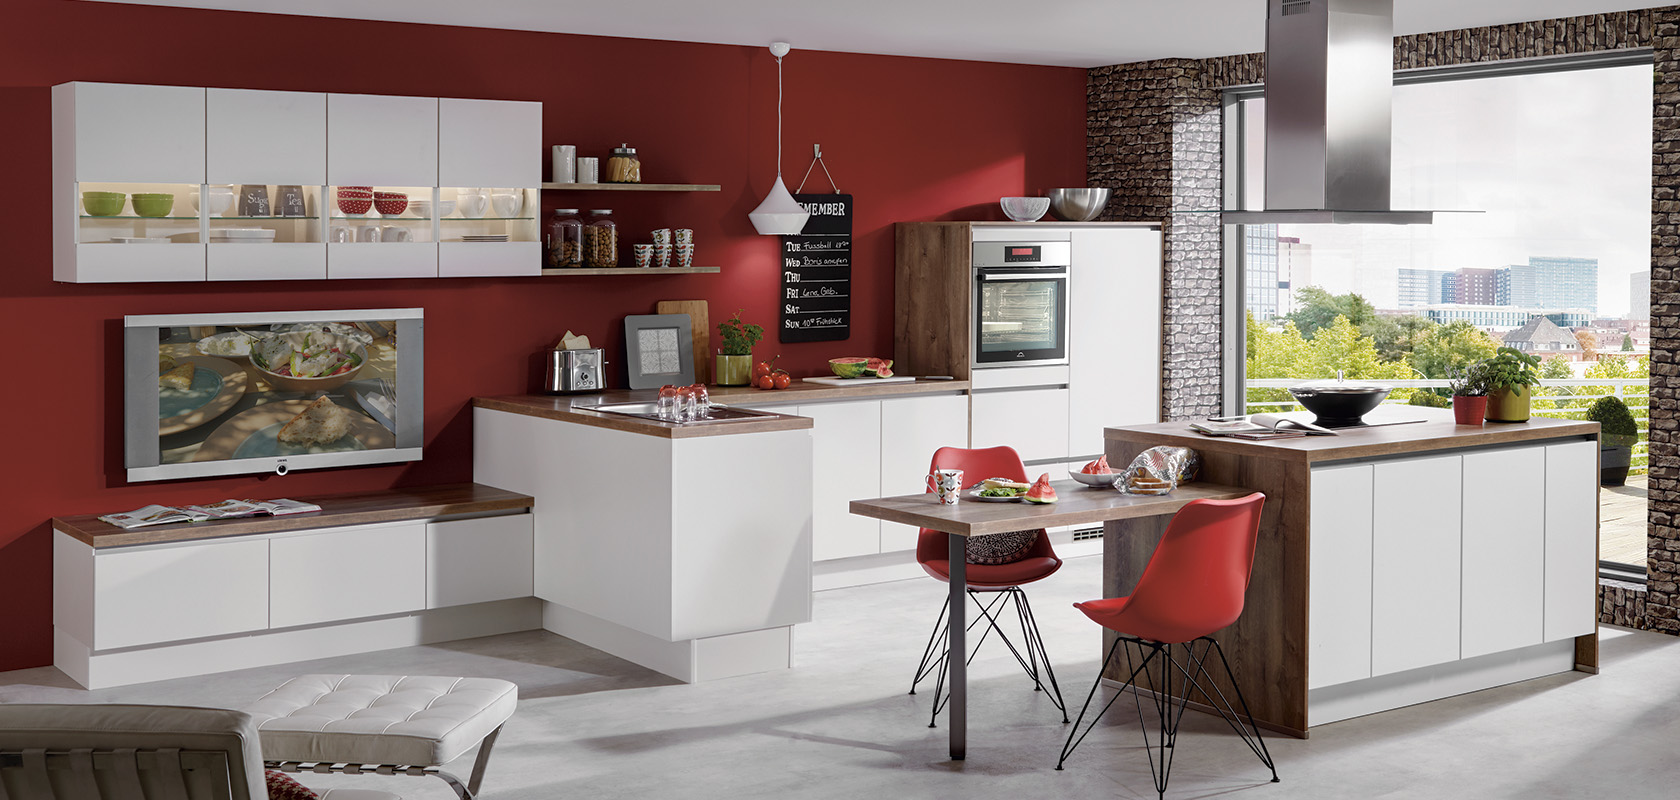 Moderne keukeninterieur met wit modulair kastwerk, rode accentmuren, bakstenen elementen, strakke apparaten en een gezellig eetgedeelte met een schilderachtig uitzicht op het raam.